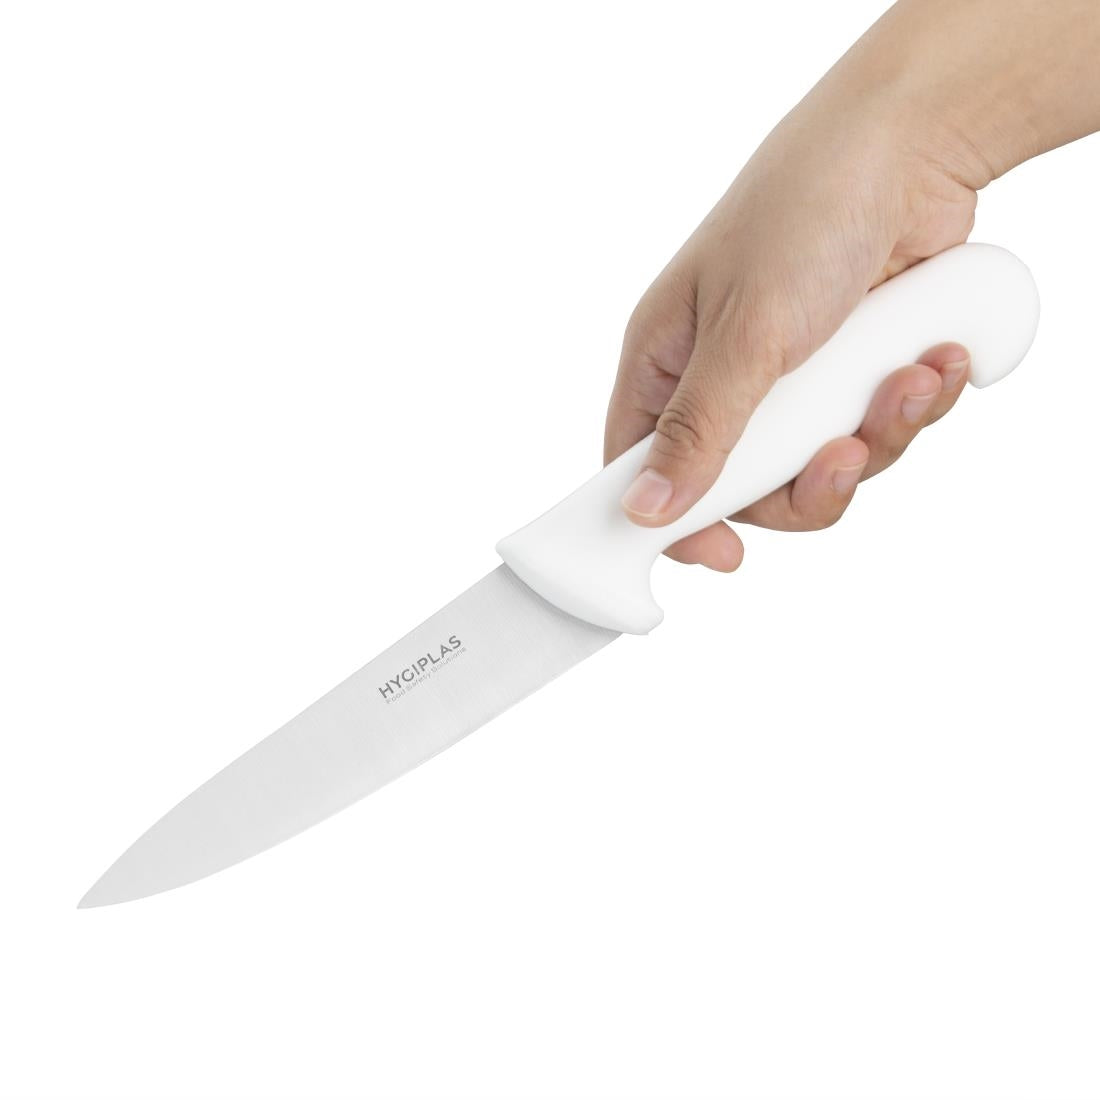 C871 Hygiplas Chefs Knife White 16cm JD Catering Equipment Solutions Ltd